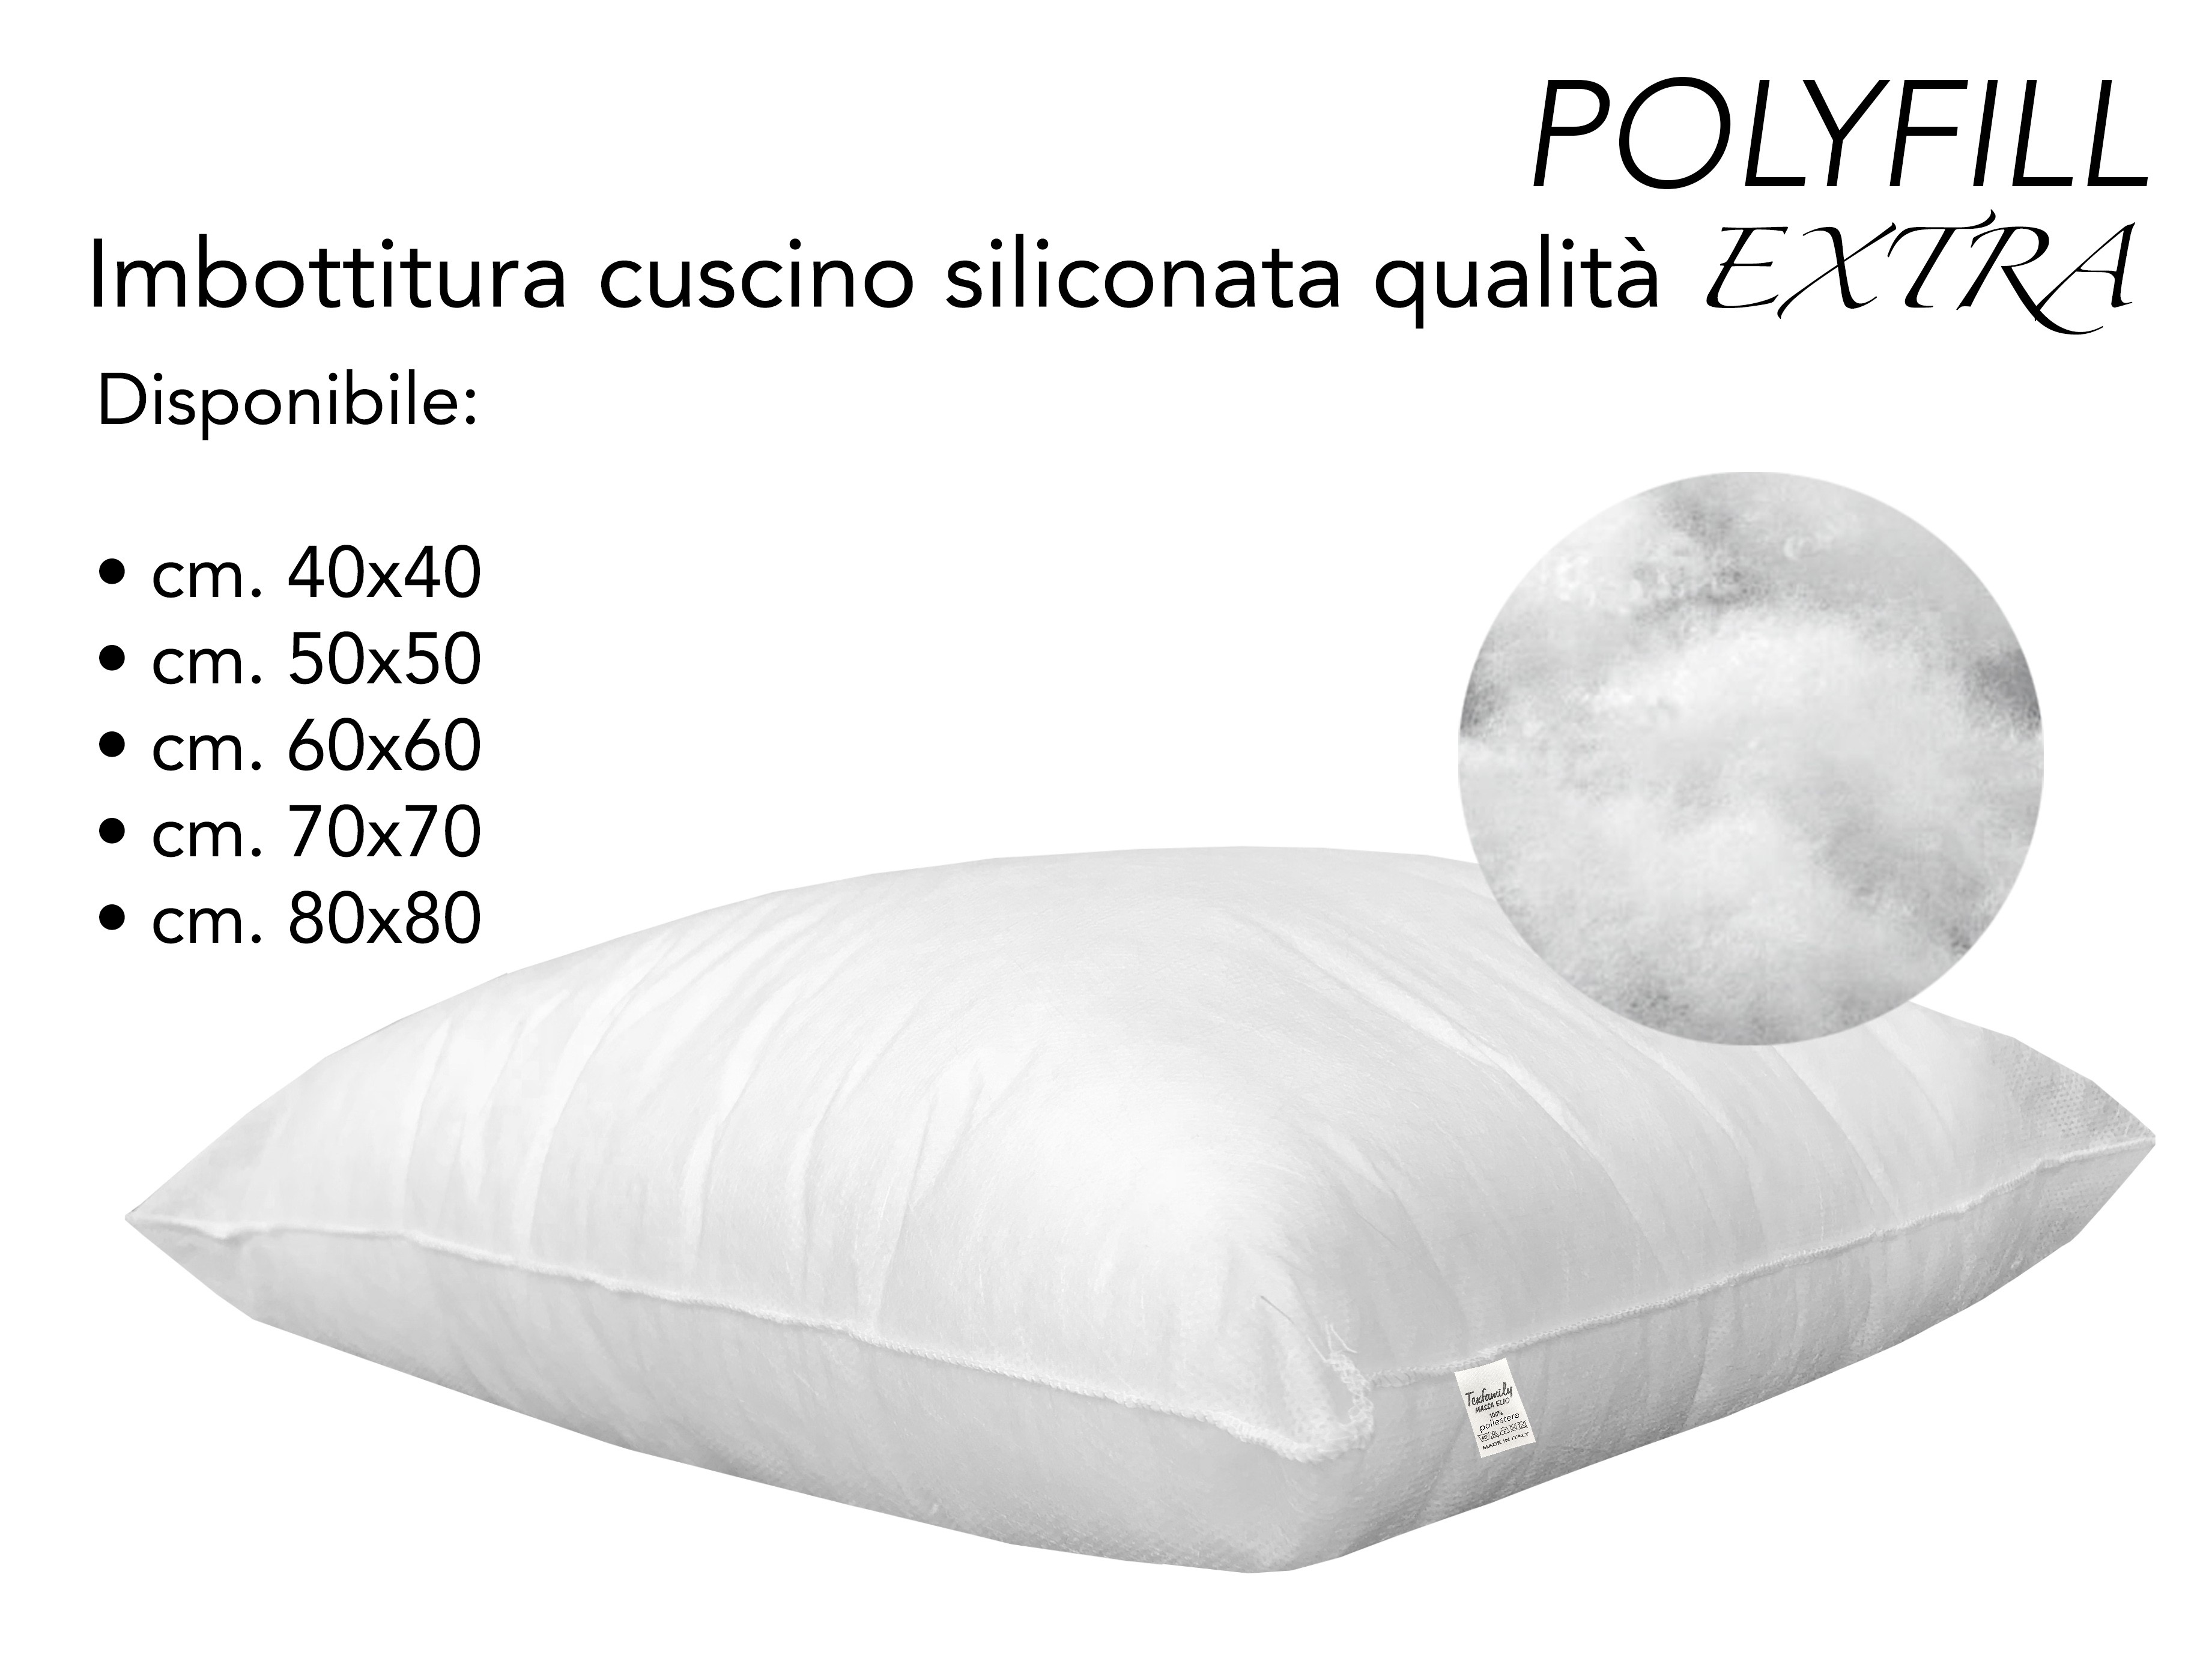 Imbottitura cuscino 60x60 Made in Italy produzione propria italiana